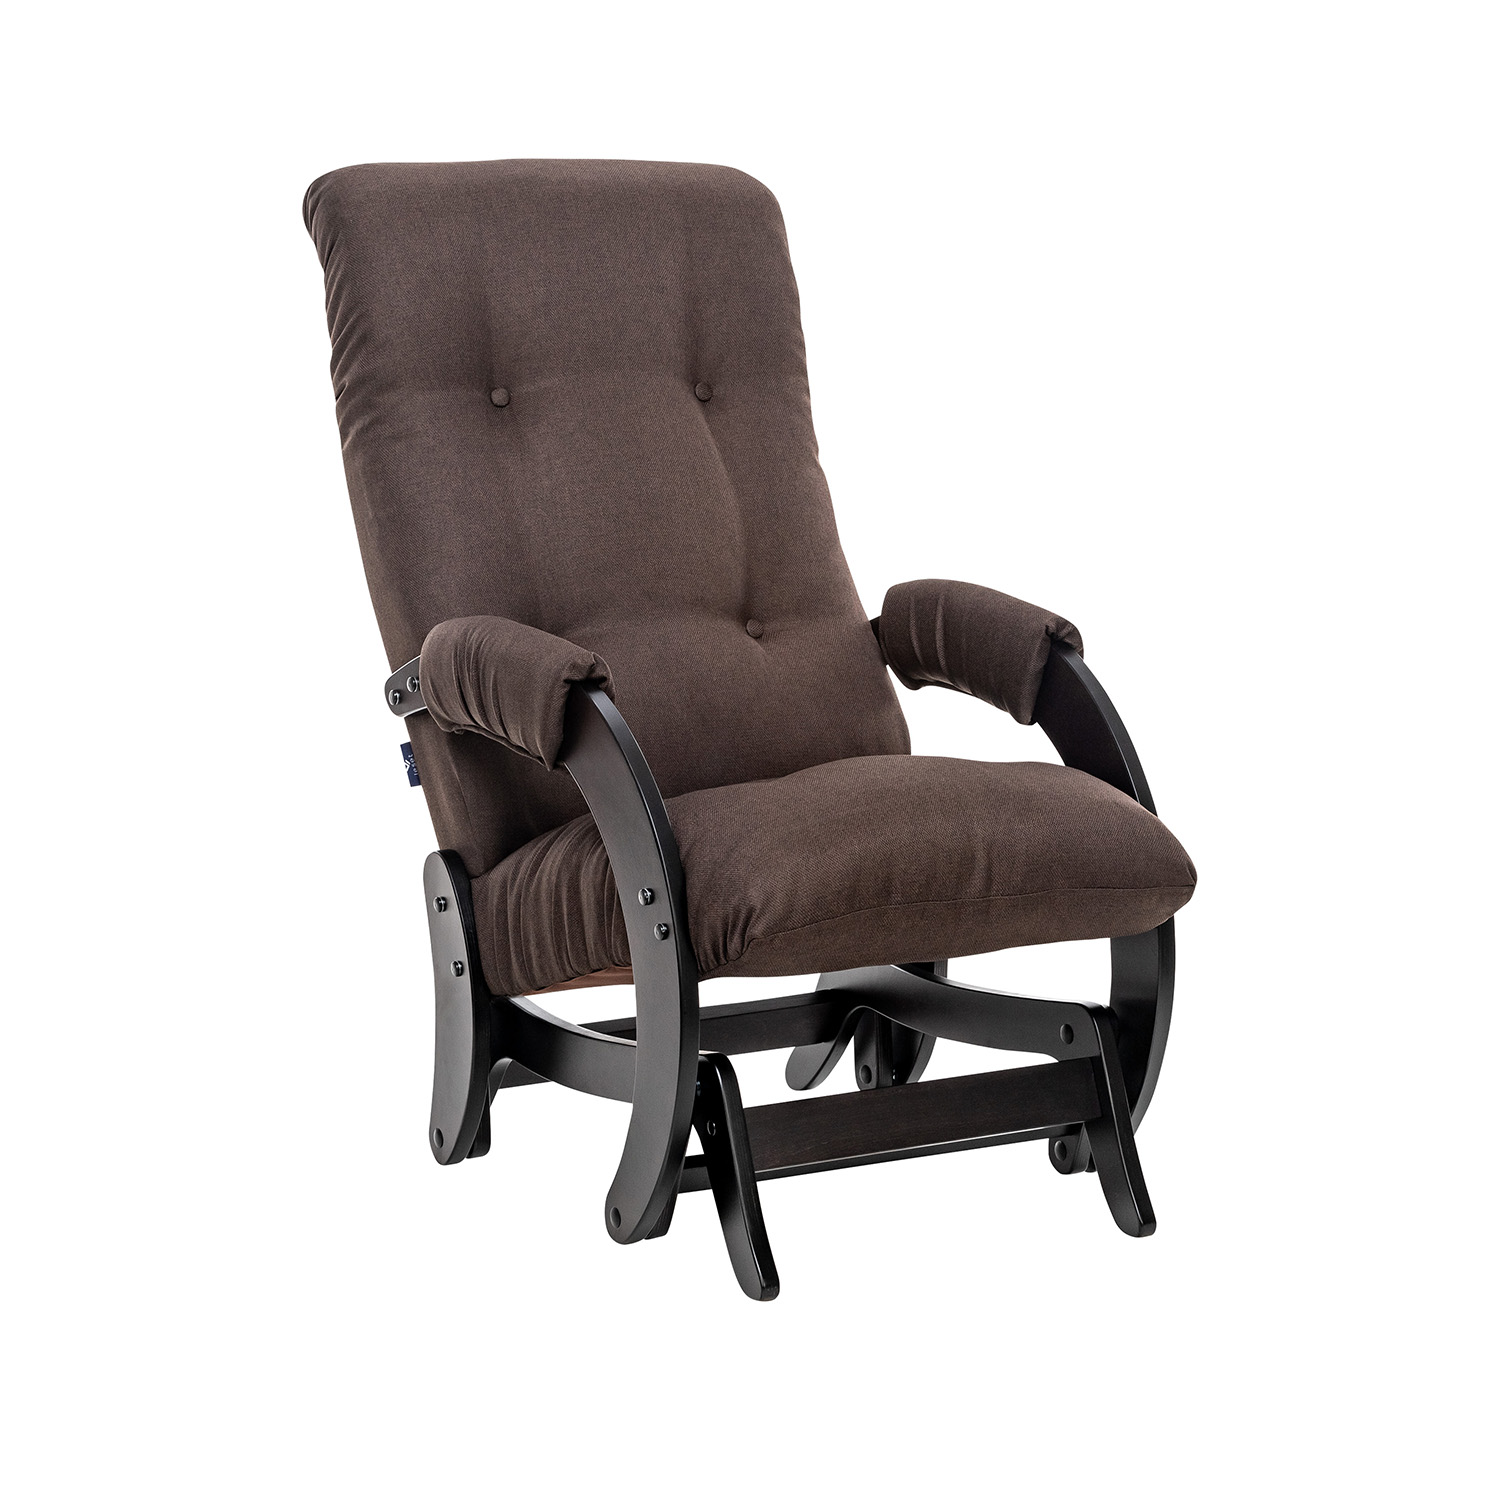 Кресла-качалки Кресло-качалка модель 68 (leset футура) венге текстура, ткань malmo 28 (leset) коричневый 60x96x89 см.